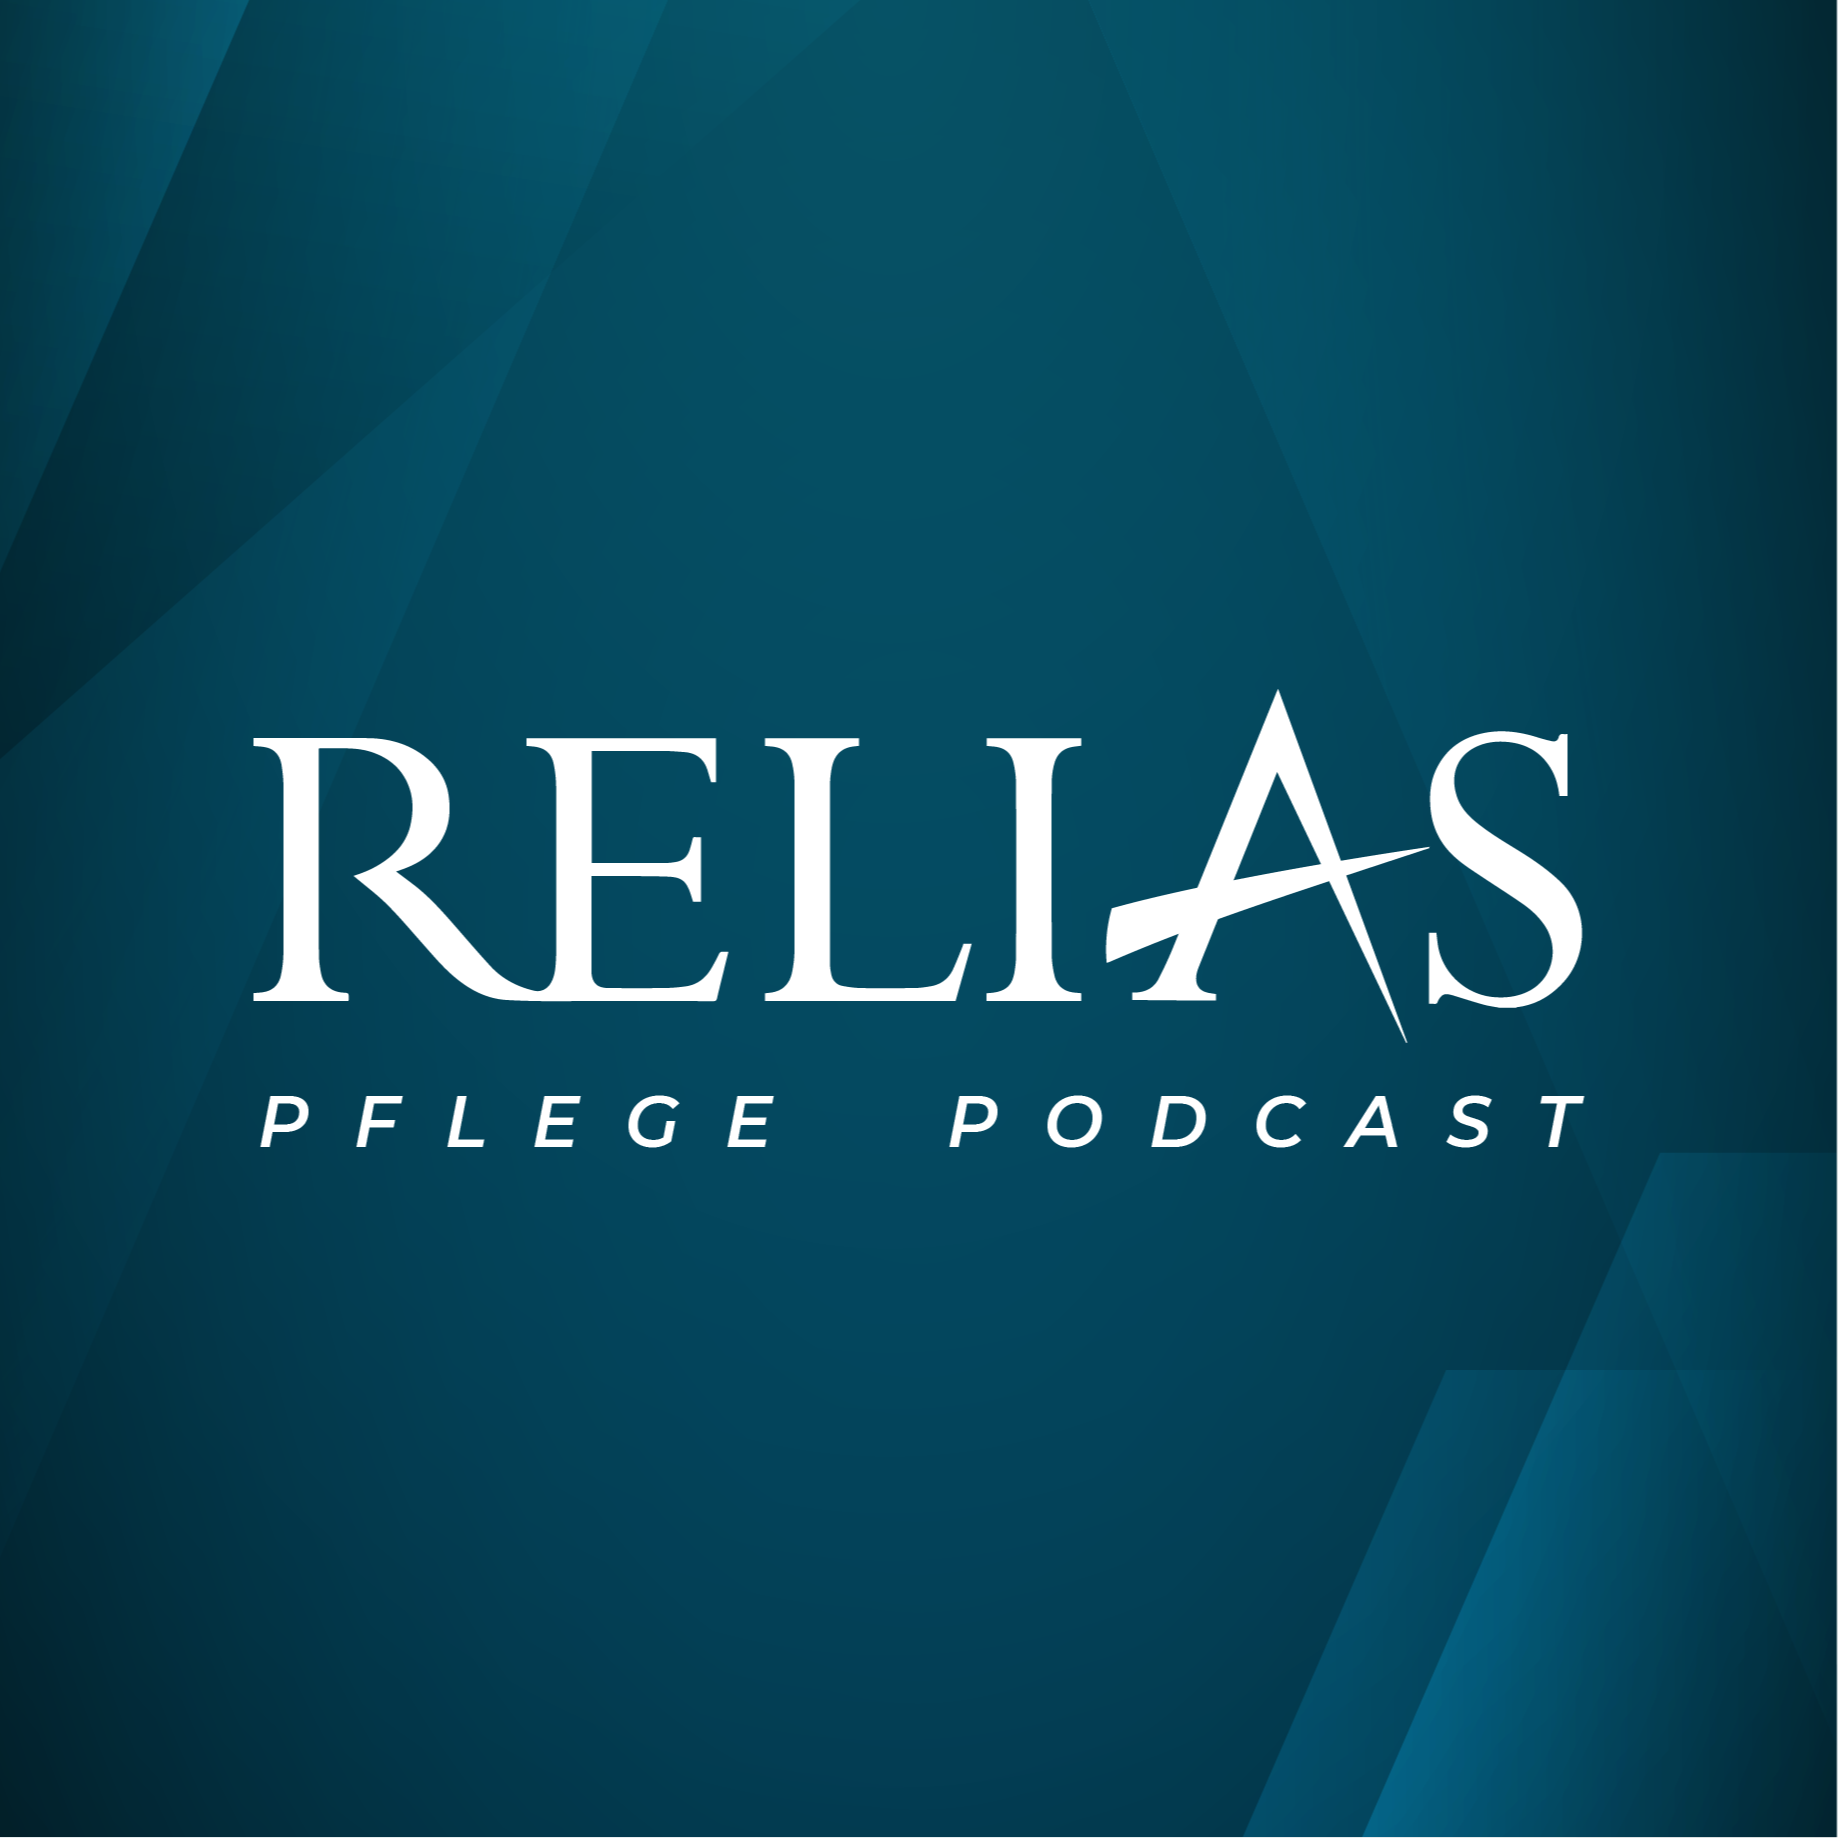 Relias Pflege Podcast